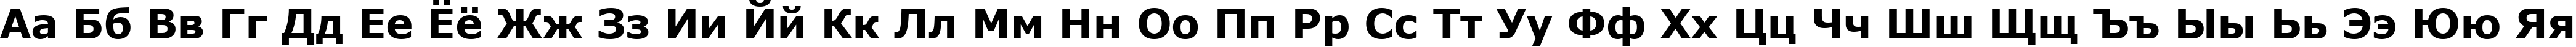 Пример написания русского алфавита шрифтом font227